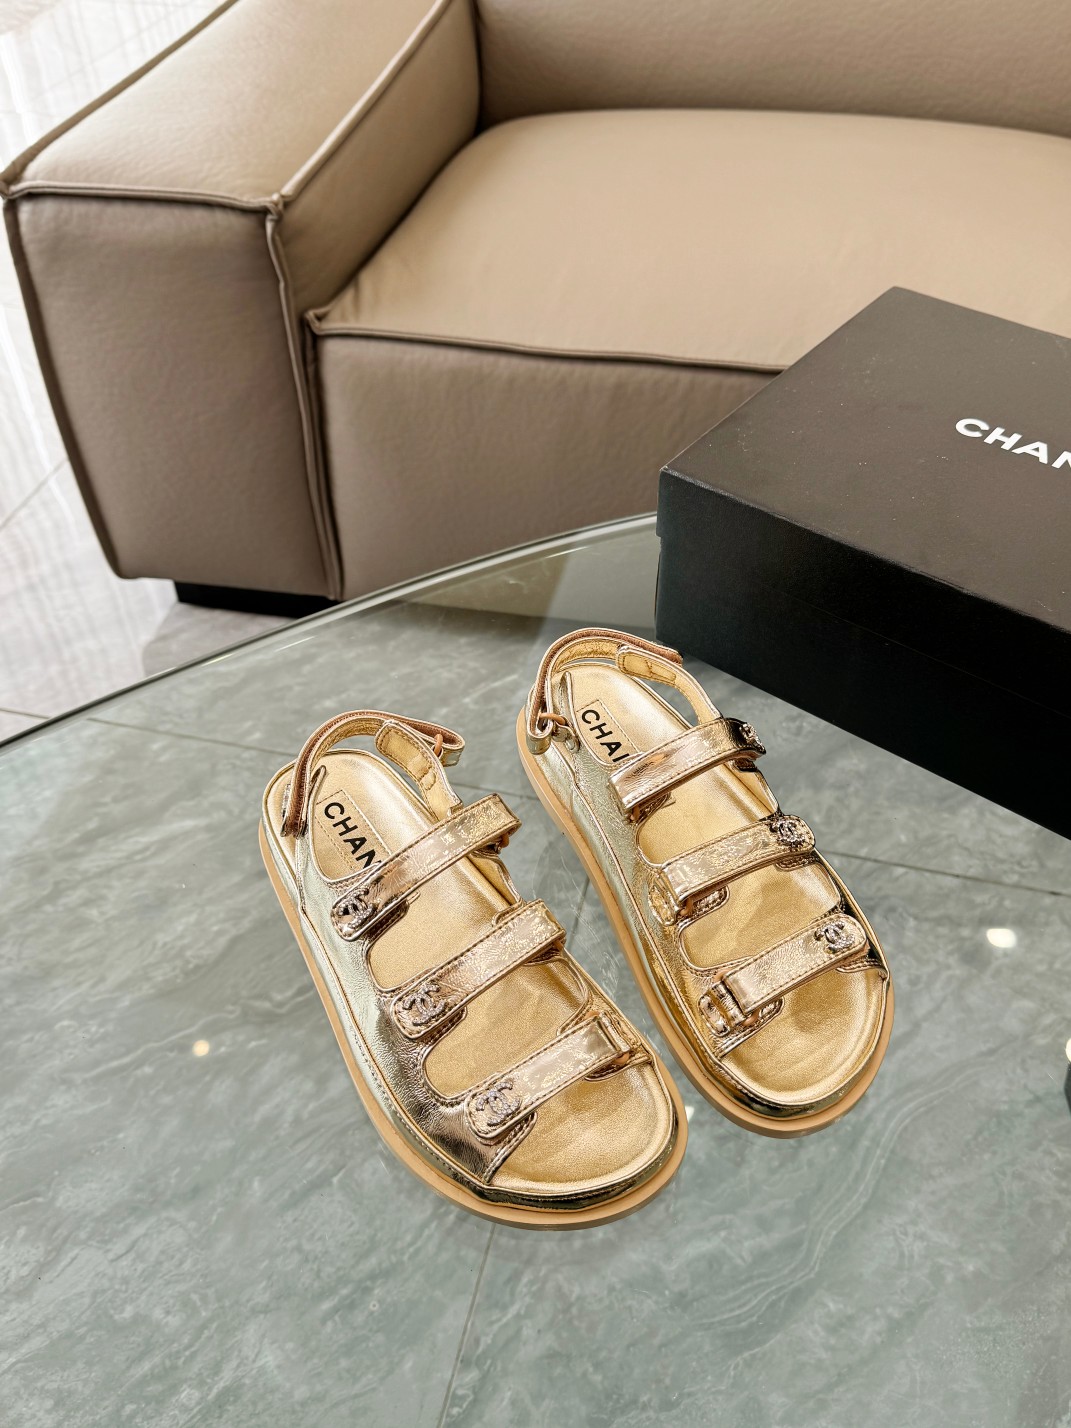 Chanel Zapatos Pantuflas A precio barato
 Hardware de oro Dermis Piel oveja Colección primavera – verano Playa